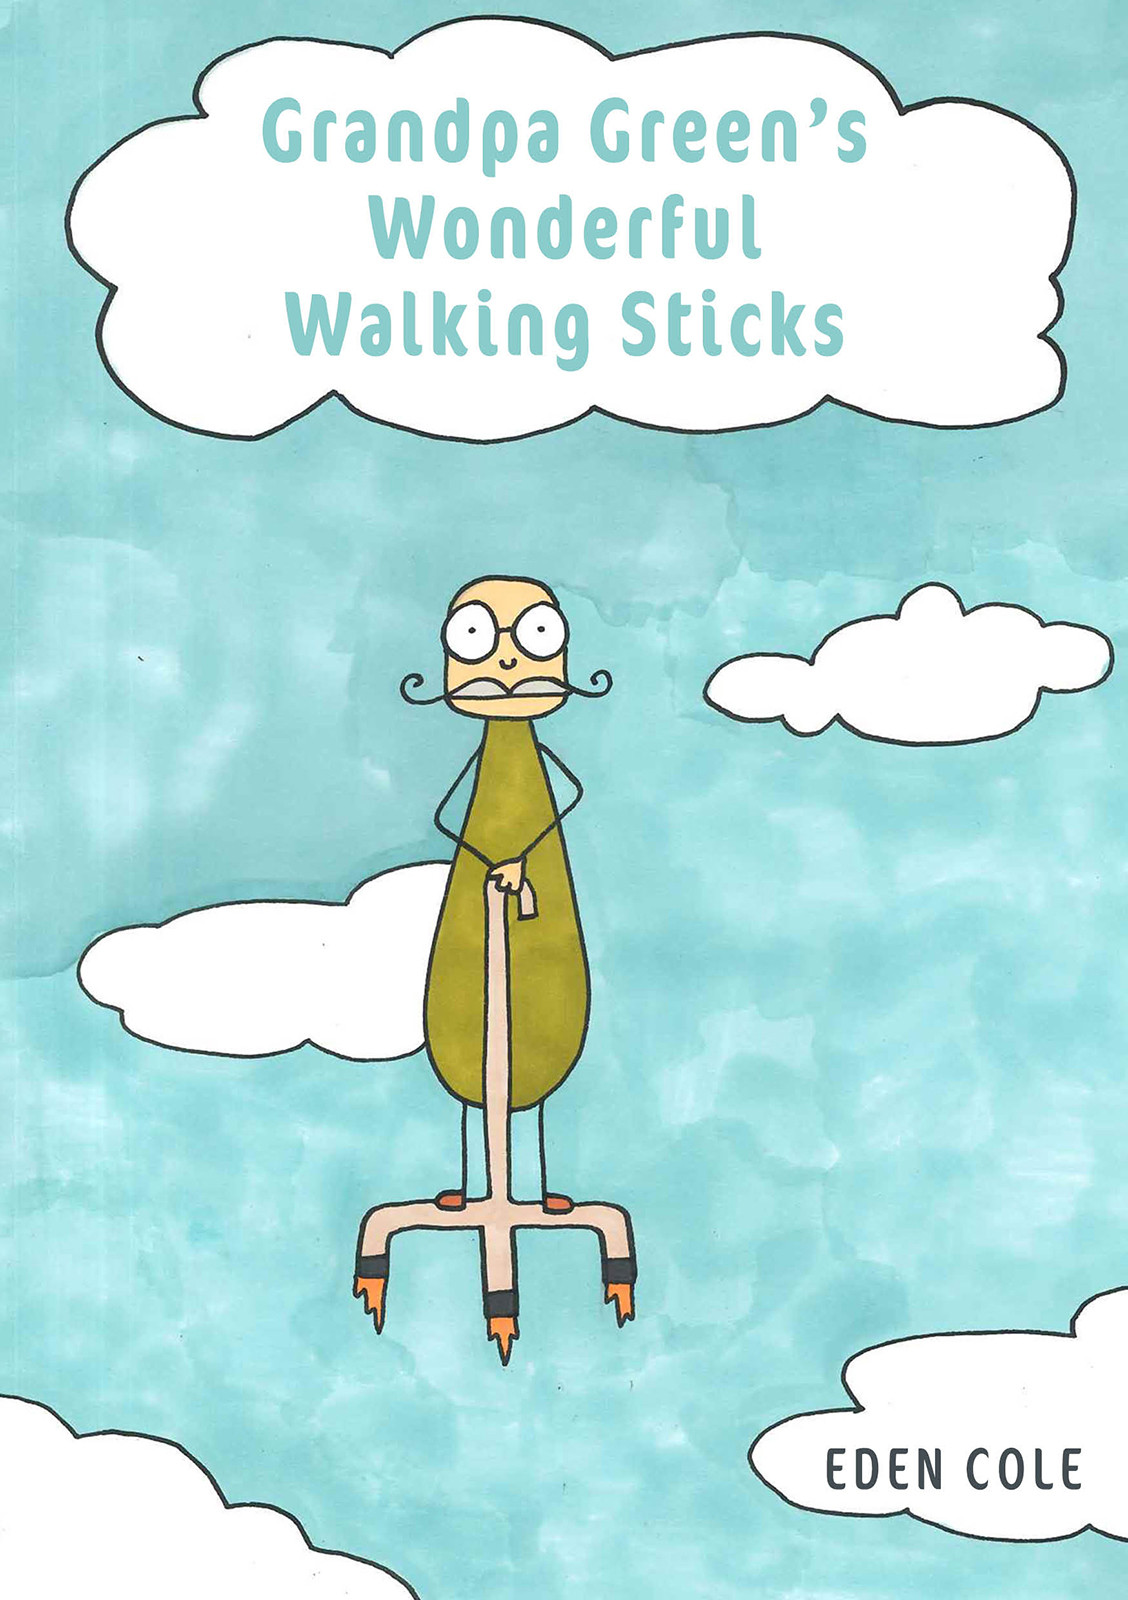 Grandpa Green's Wonderful Walking Sticks